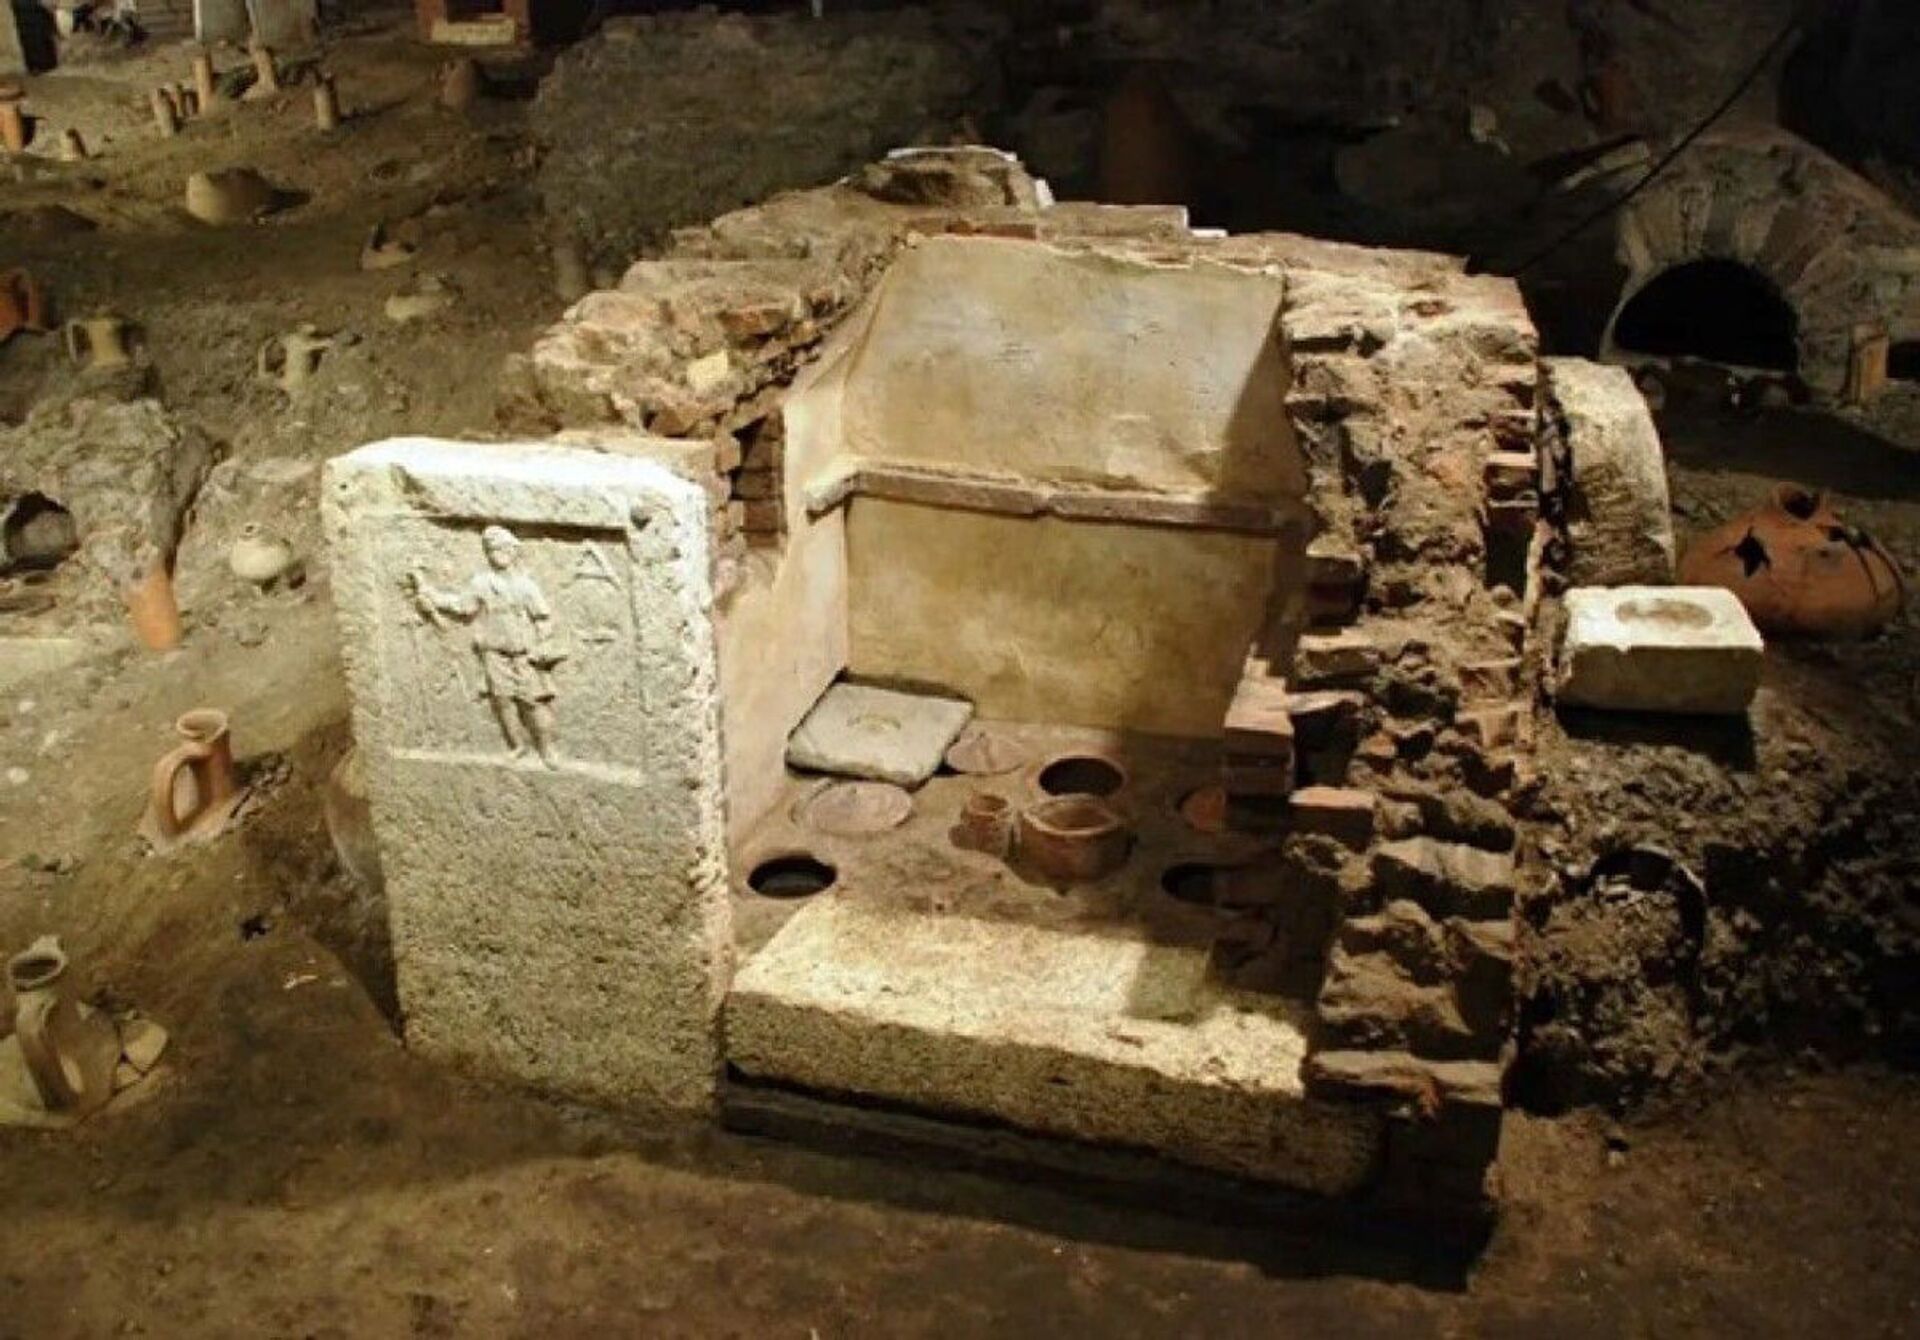 Cemitério da elite e de escravos da época dos césares romanos é descoberto no Vaticano (FOTOS) - Sputnik Brasil, 1920, 09.02.2021